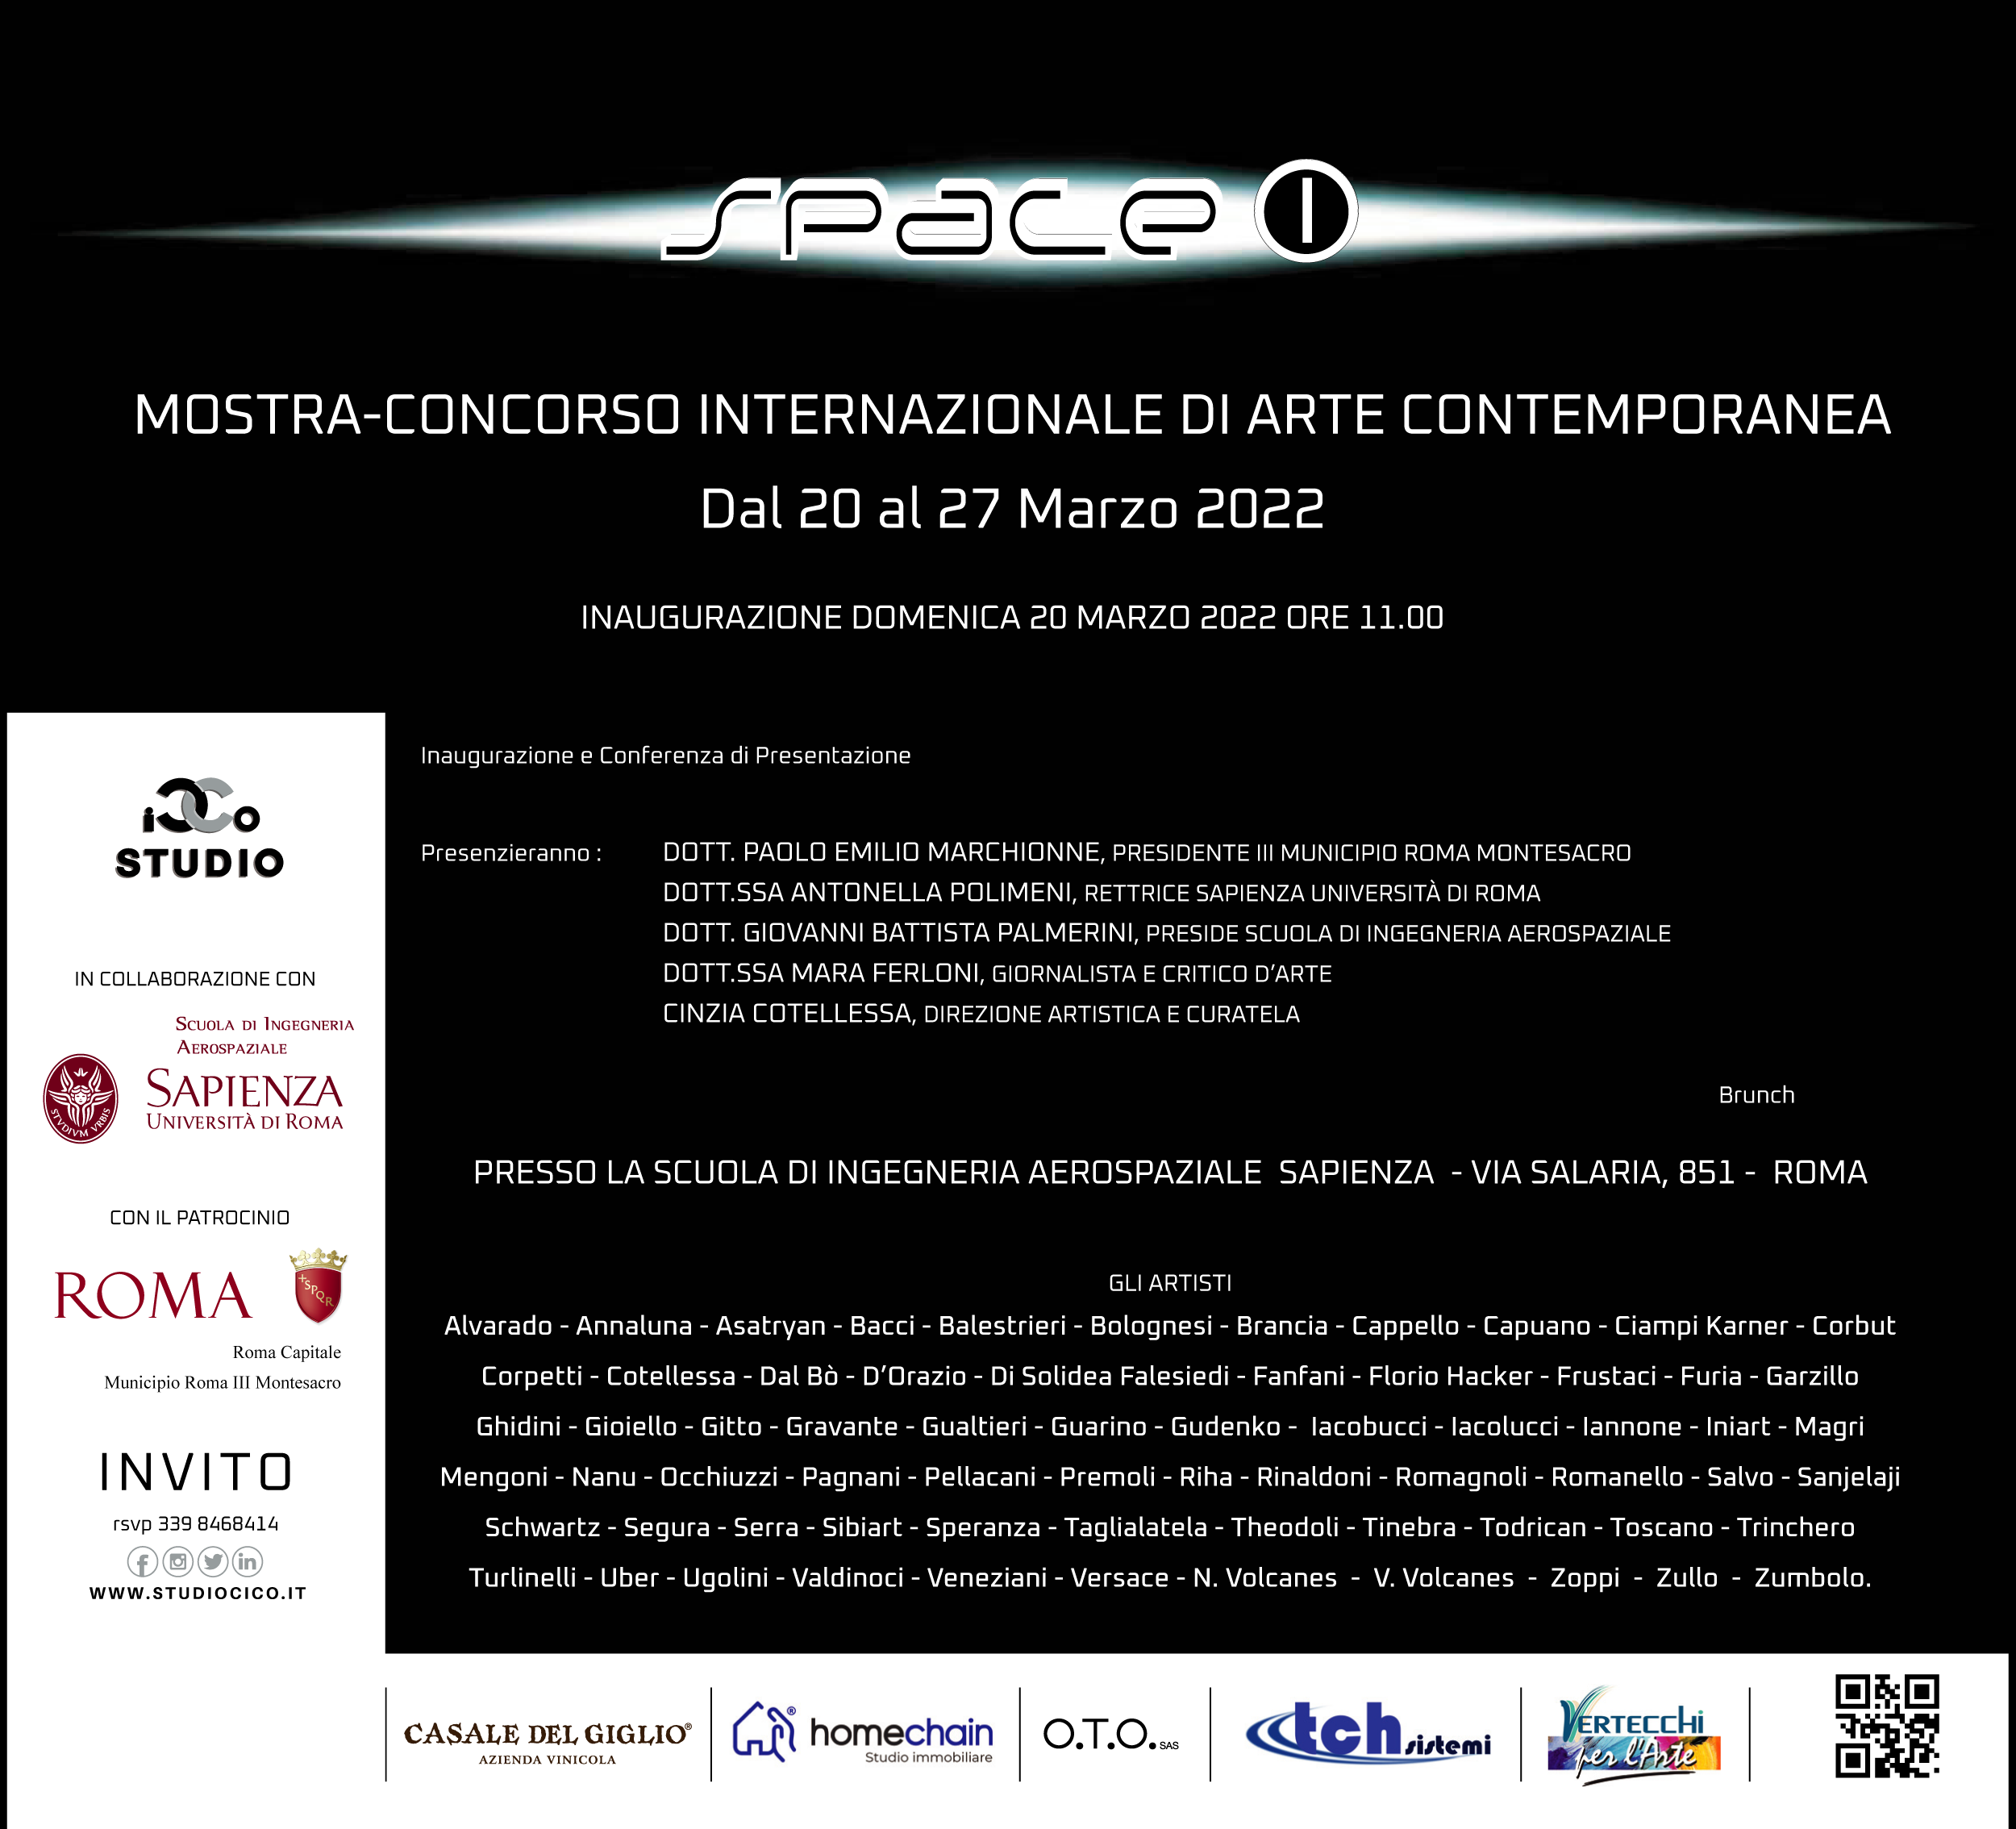 SPACE ONE, Mostra Internazionale di Arte Contemporanea – Domenica 20 marzo 2022 ore 12.00 – Brunch Dal 20 al 27 marzo 2022 – Presso la Scuola di Ingegneria Aerospaziale Sapienza – Roma